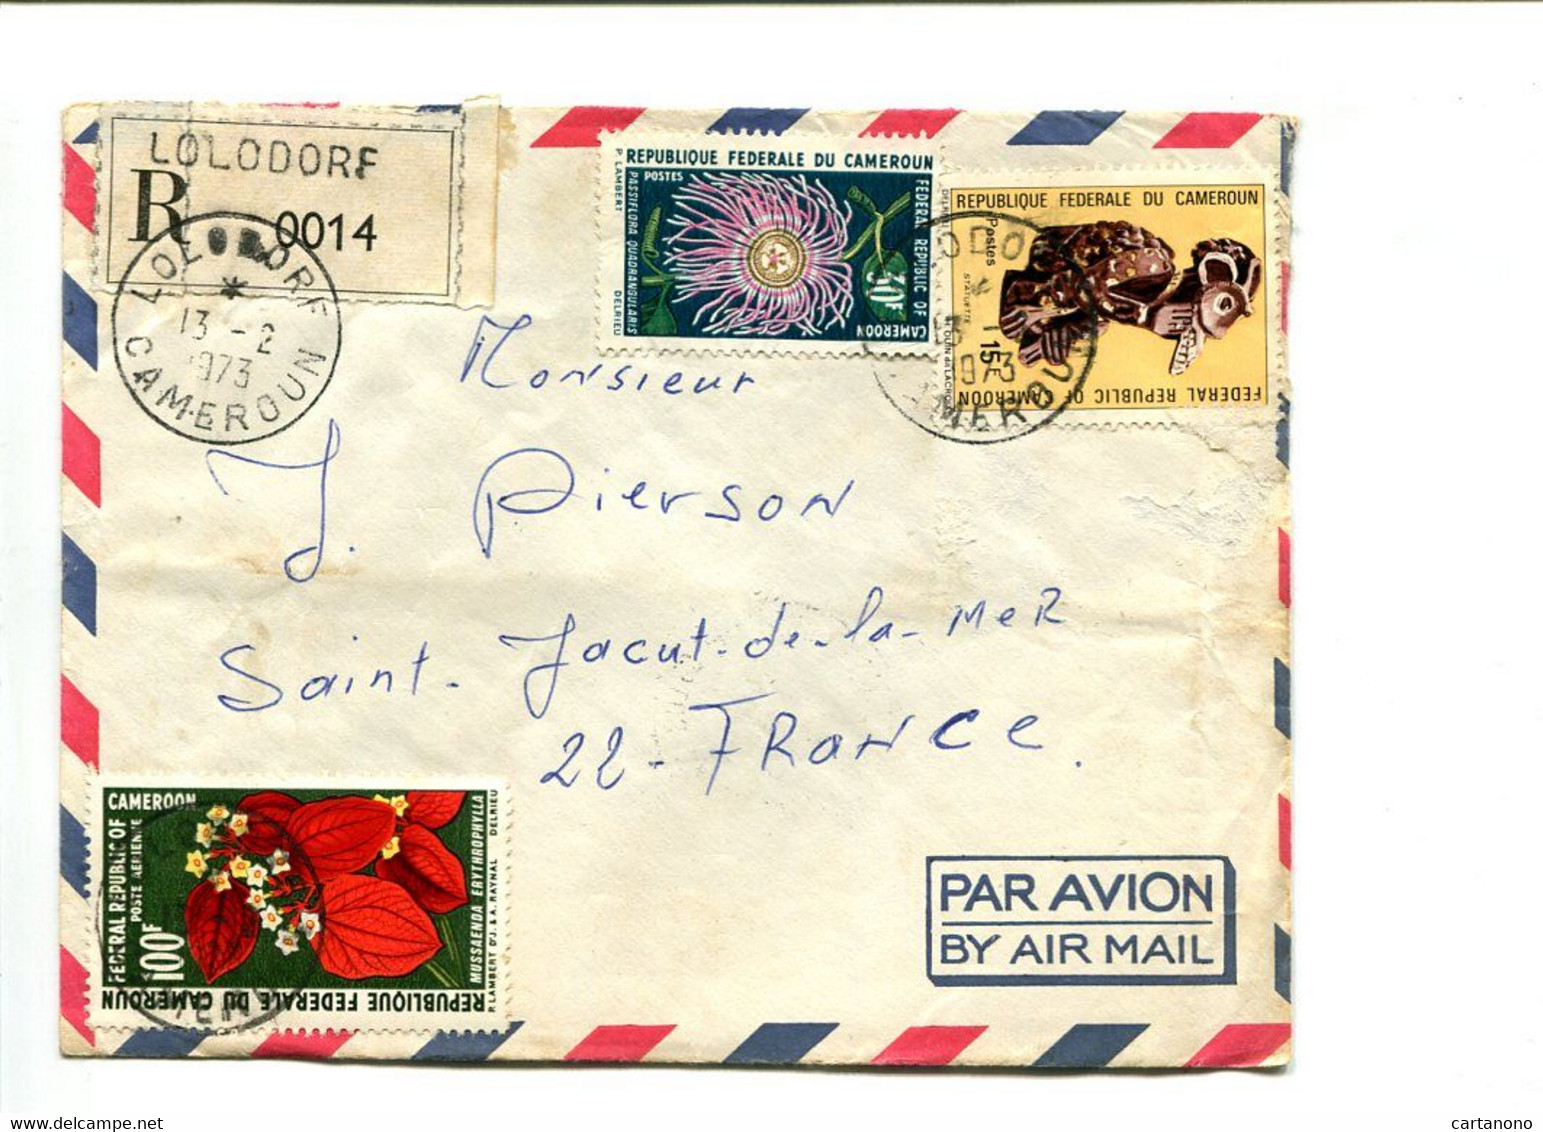 CAMEROUN Lolodore 1973 -  Affranchissement Sur Lettre Recommandée Par Avion - Fleurs - Kamerun (1960-...)